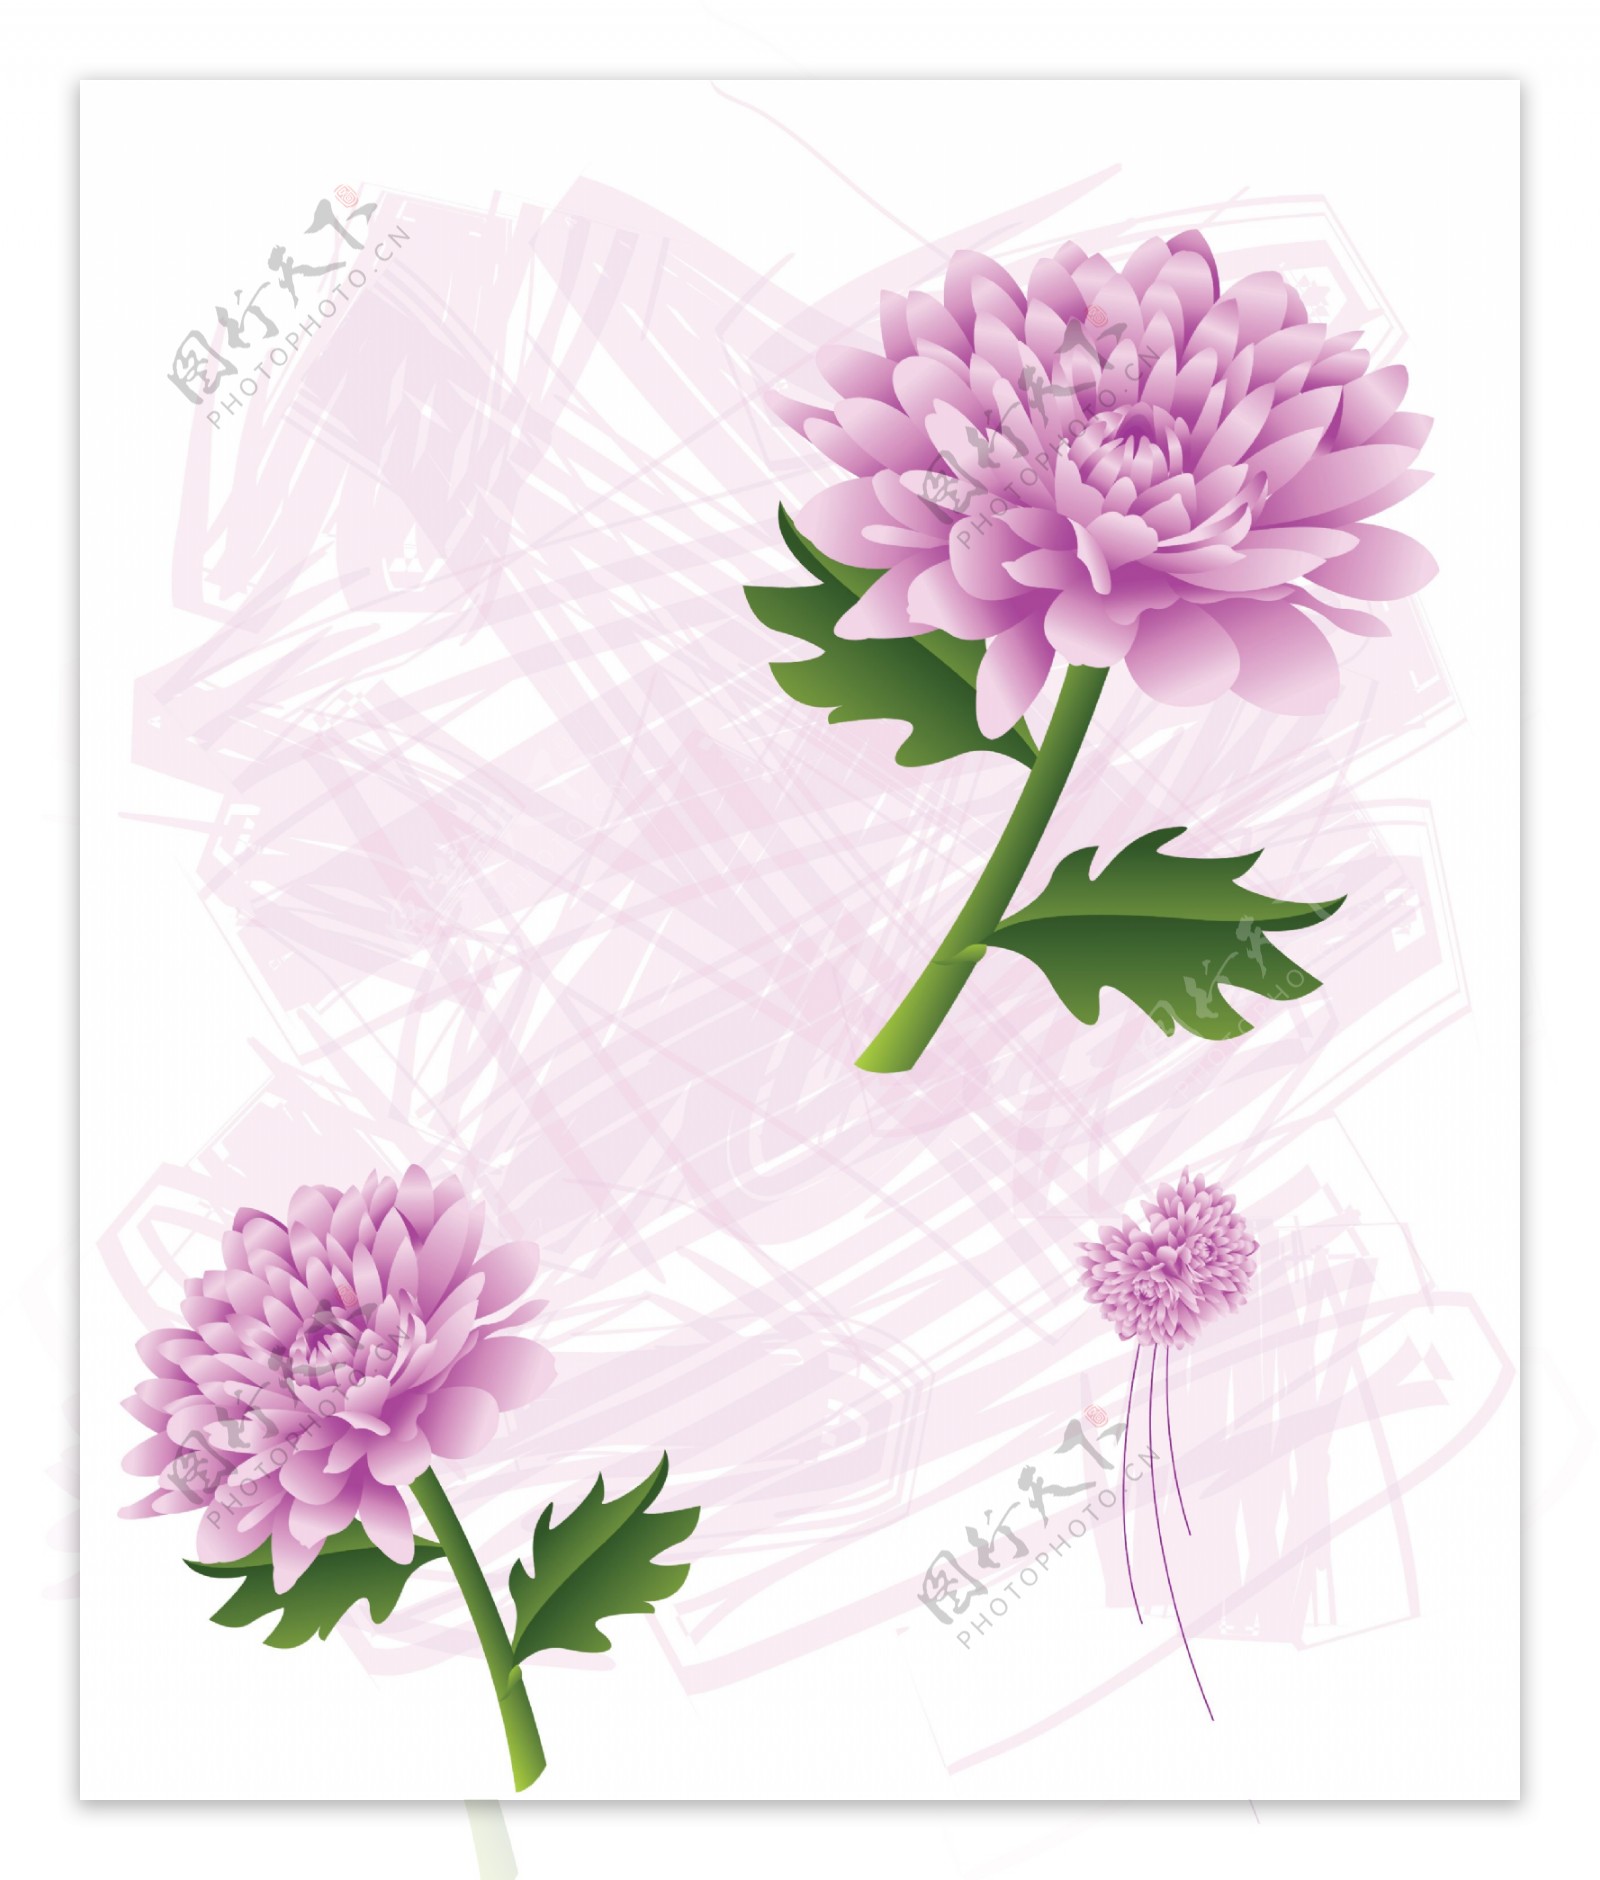 室内移门紫色菊花创意画